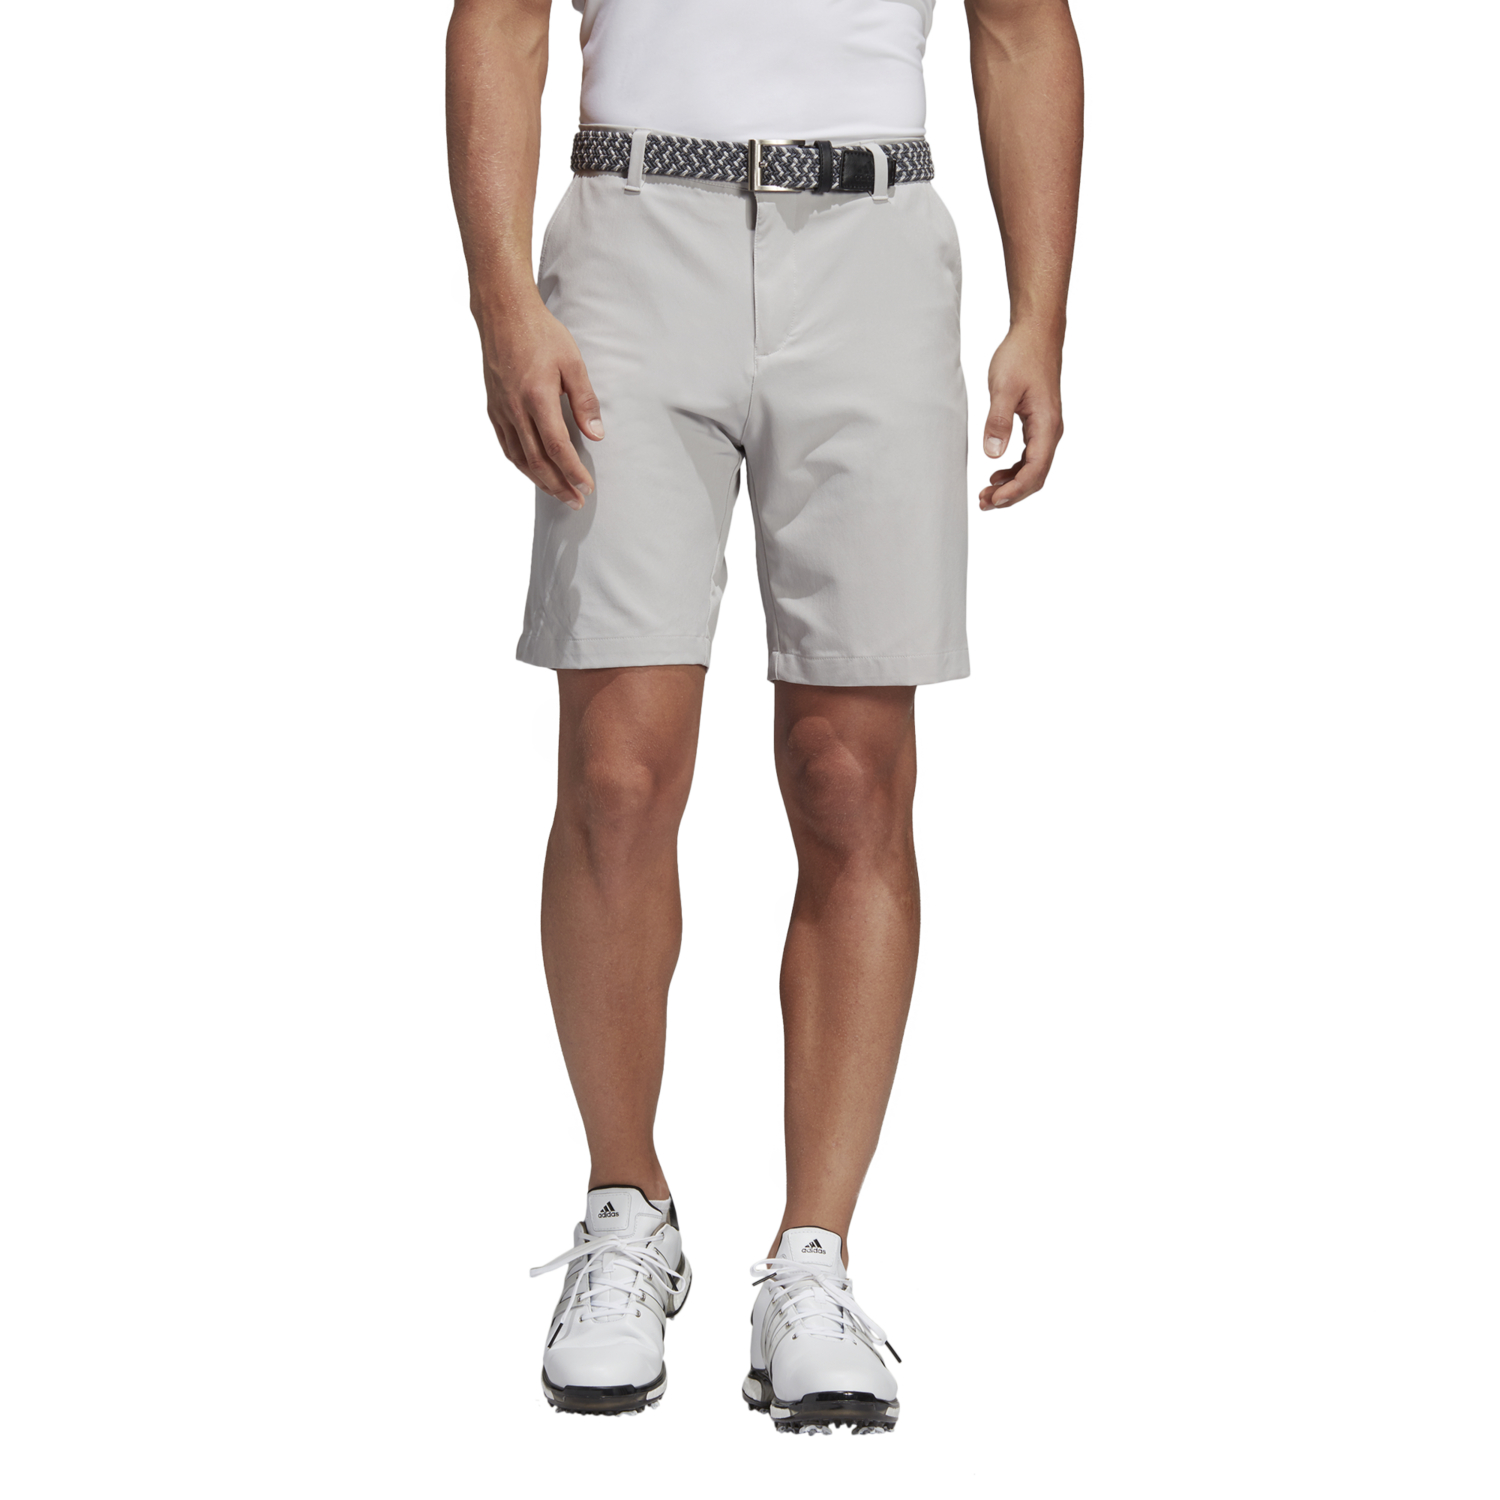 adidas golf shorts mens